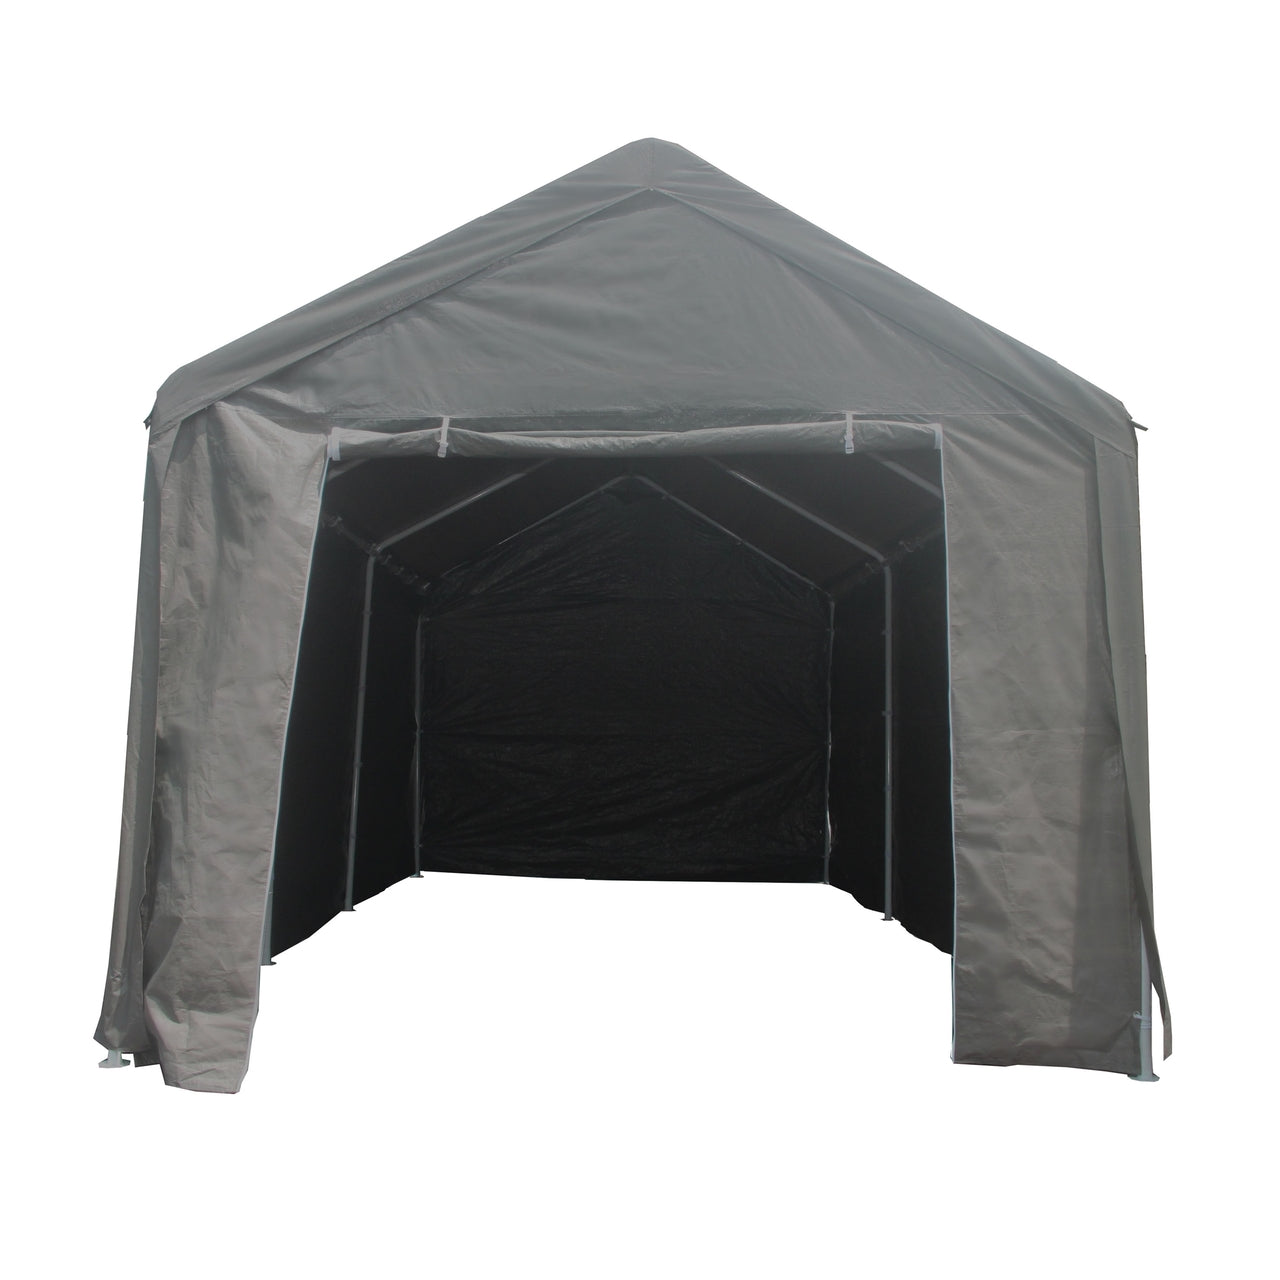 Aleko Carports Heavy Duty Outdoor Canopy Carport Tent - 10 X